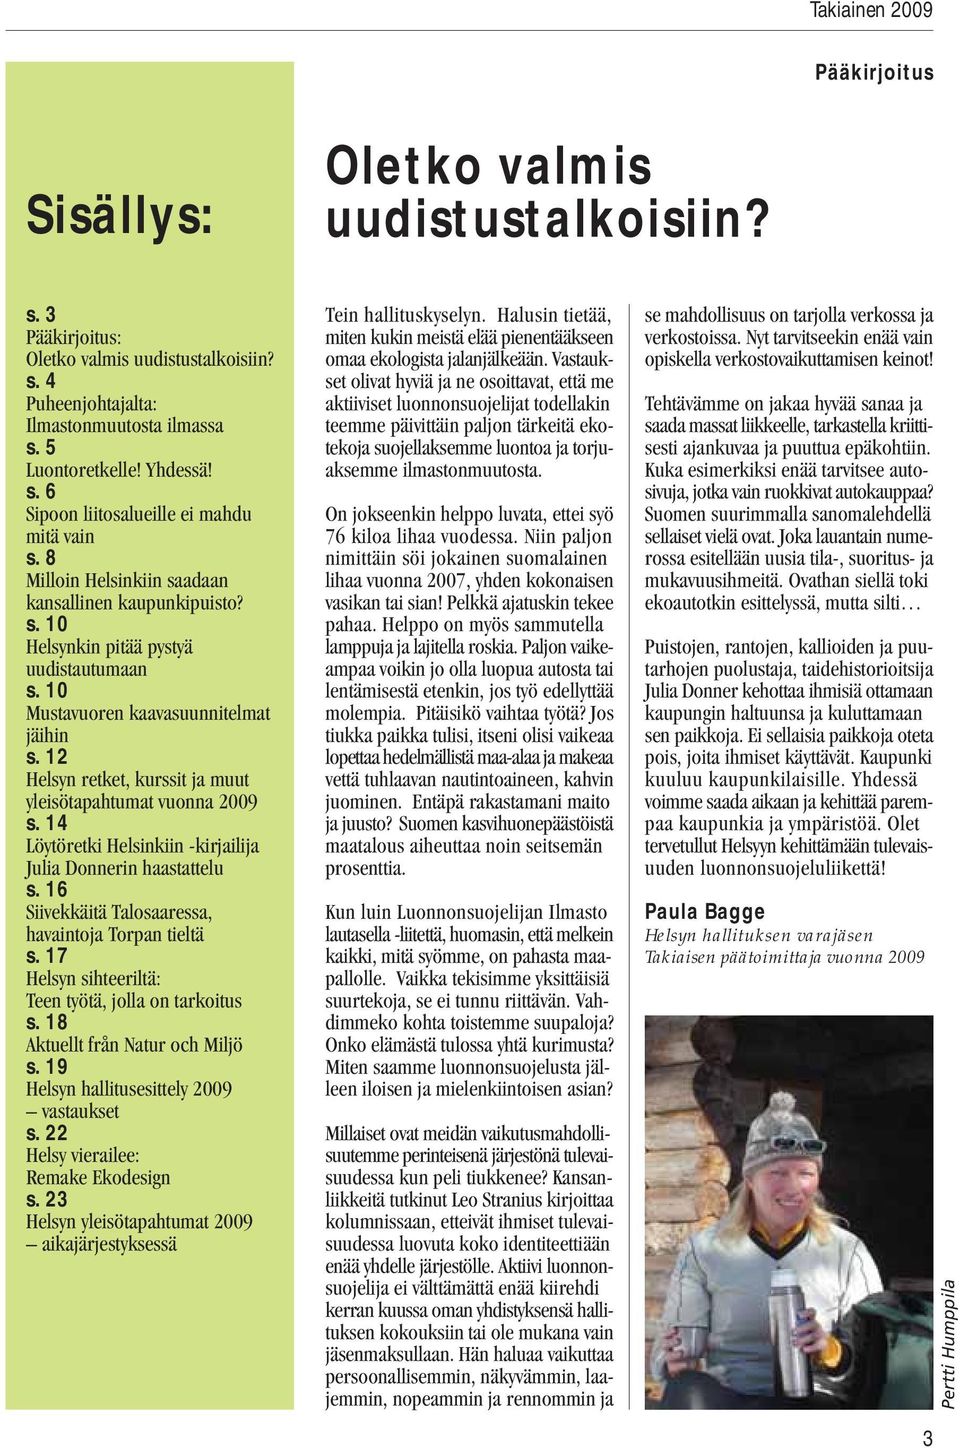 10 Mustavuoren kaavasuunnitelmat jäihin s. 12 Helsyn retket, kurssit ja muut yleisötapahtumat vuonna 2009 s. 14 Löytöretki Helsinkiin -kirjailija Julia Donnerin haastattelu s.